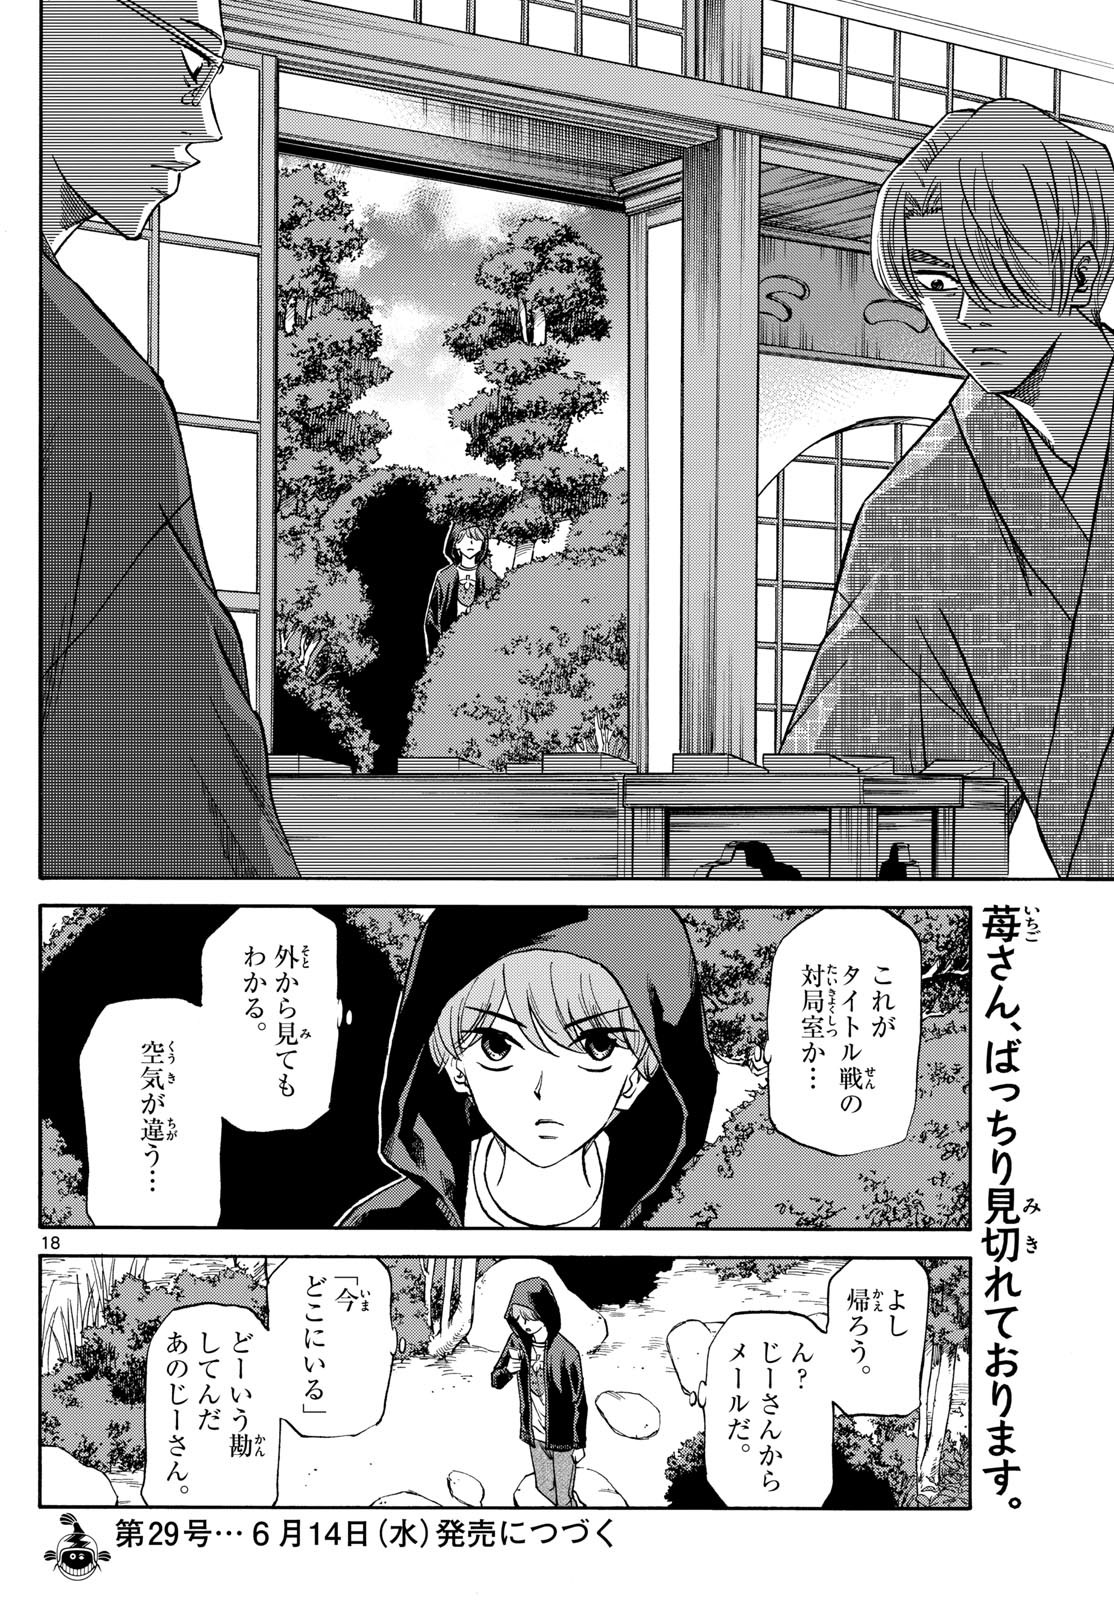 Ryu-to-Ichigo - Chapter 146 - Page 18